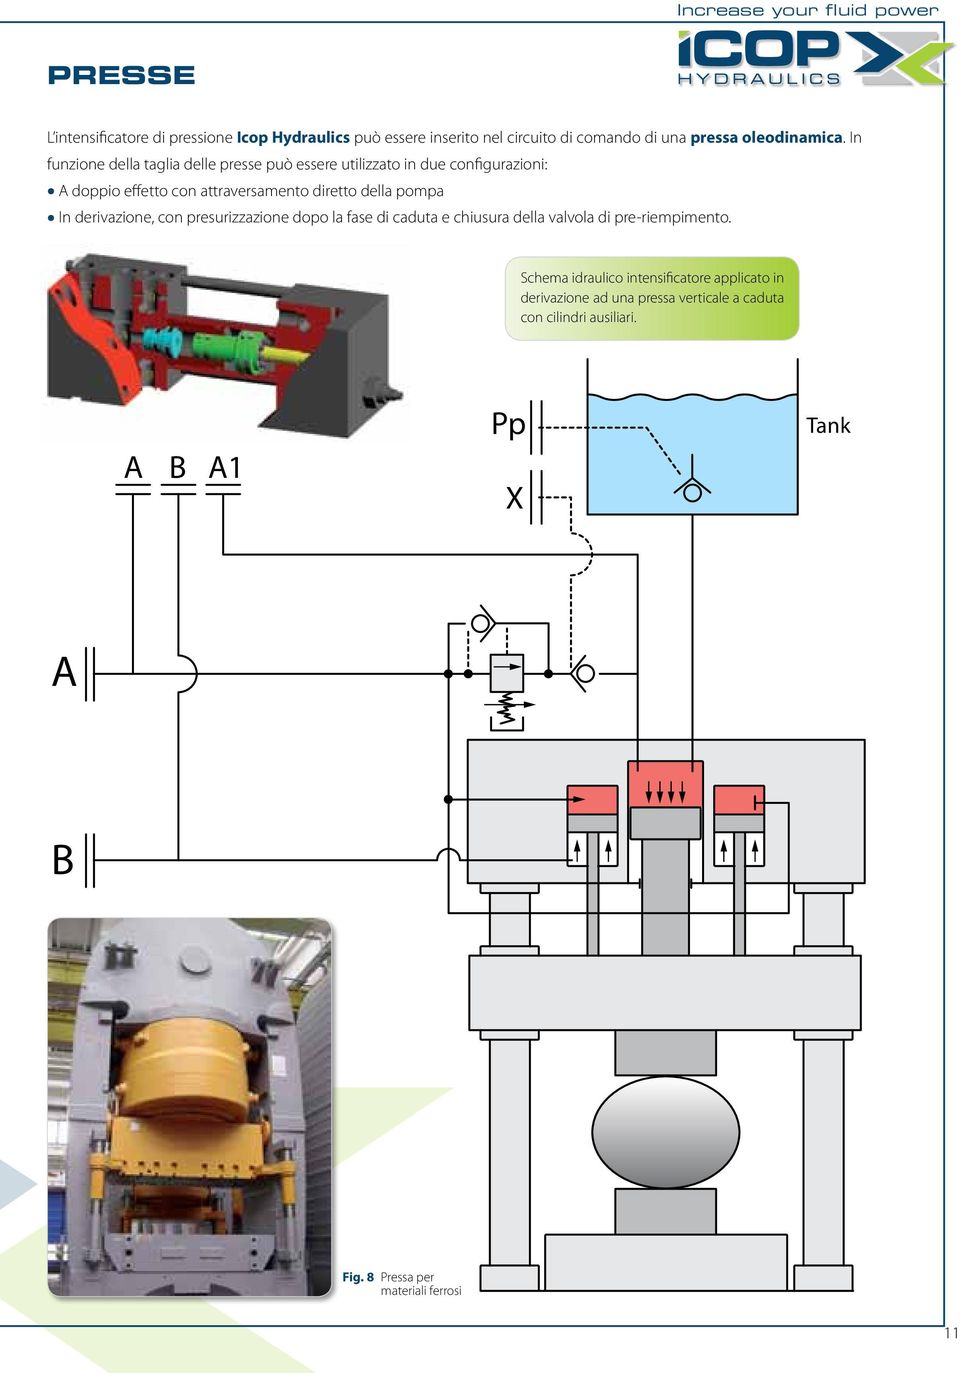 In funzione della taglia delle presse può essere utilizzato in due configurazioni: doppio effetto con attraversamento diretto della pompa